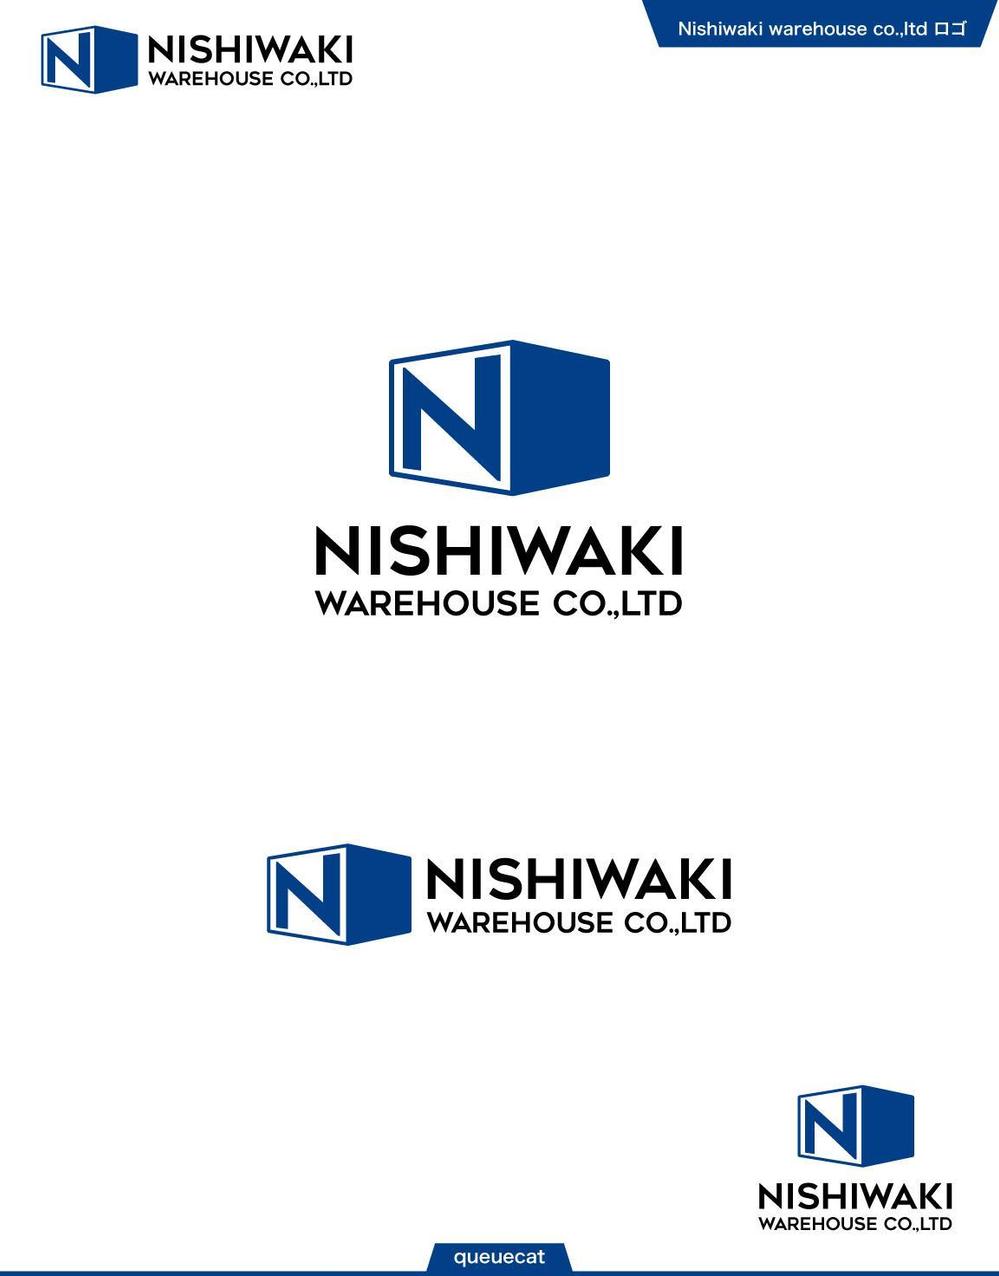 Nishiwaki warehouse1_1.jpg